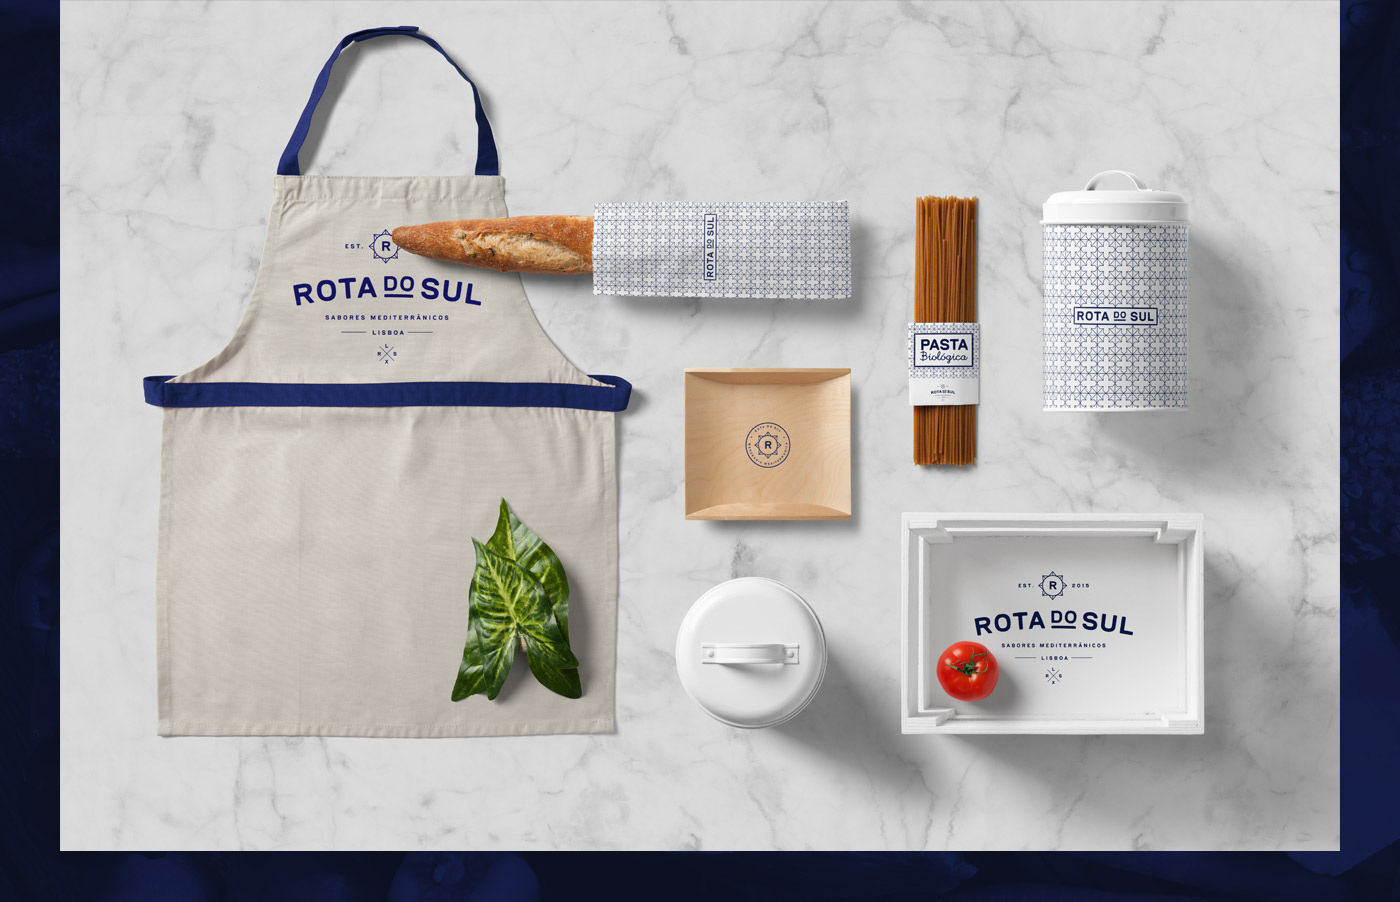 Rota do Sul graphic design  branding  art direction  ILLUSTRATION  restaurant Grocery artisanal Portugal trendy